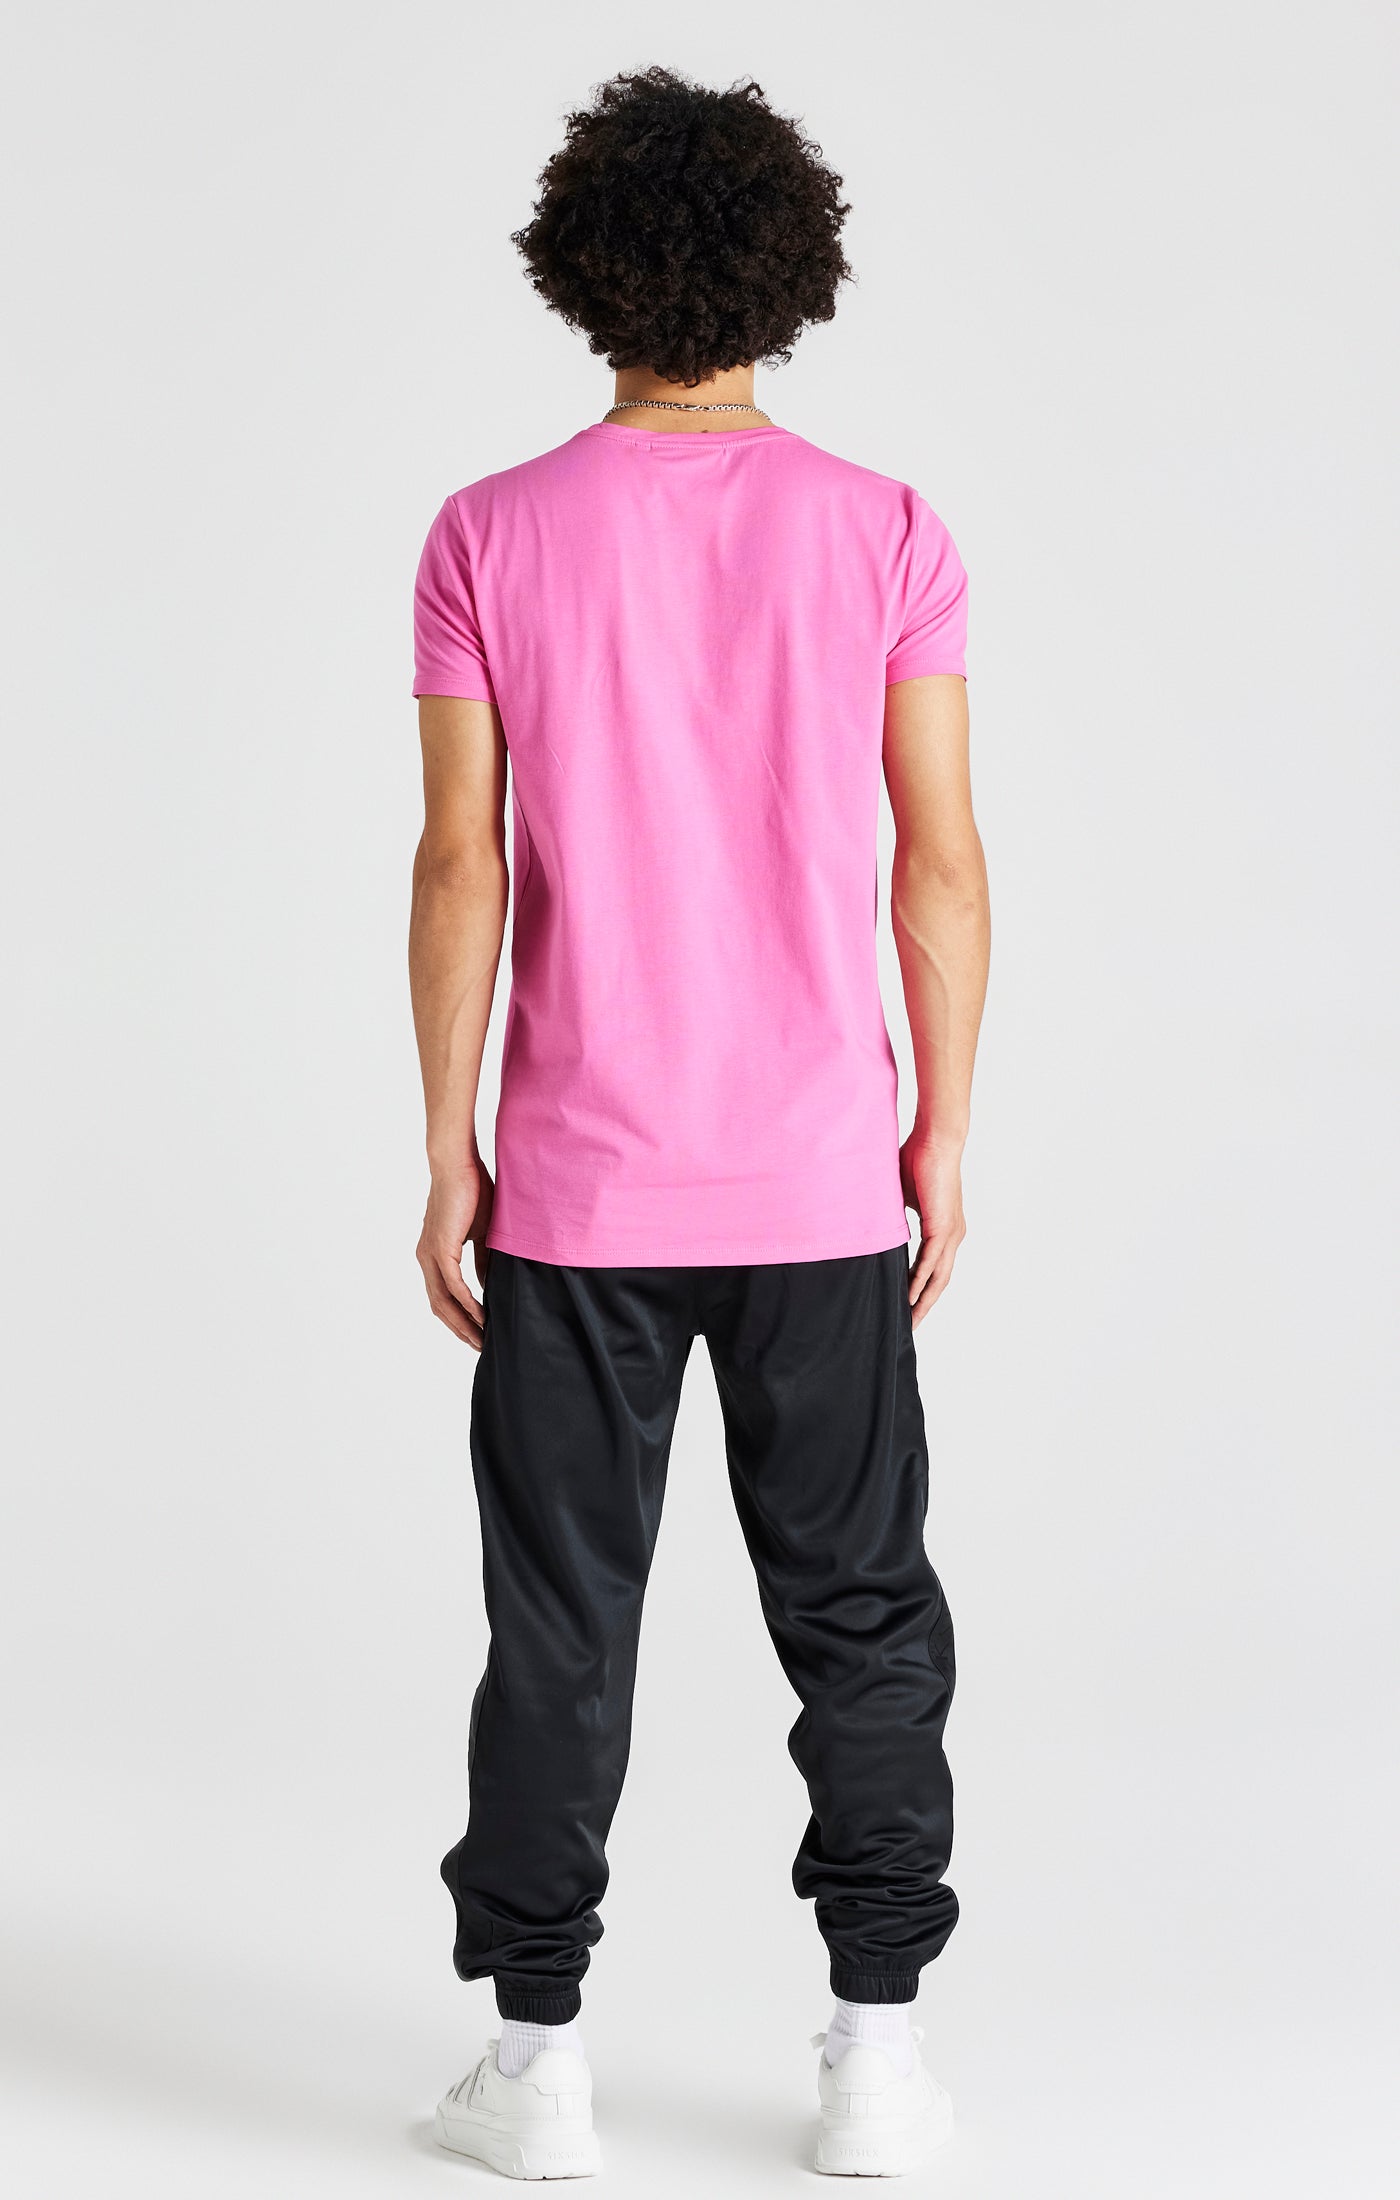 Pinkes Kurzärmliges Muskelfitness T Shirt (5)